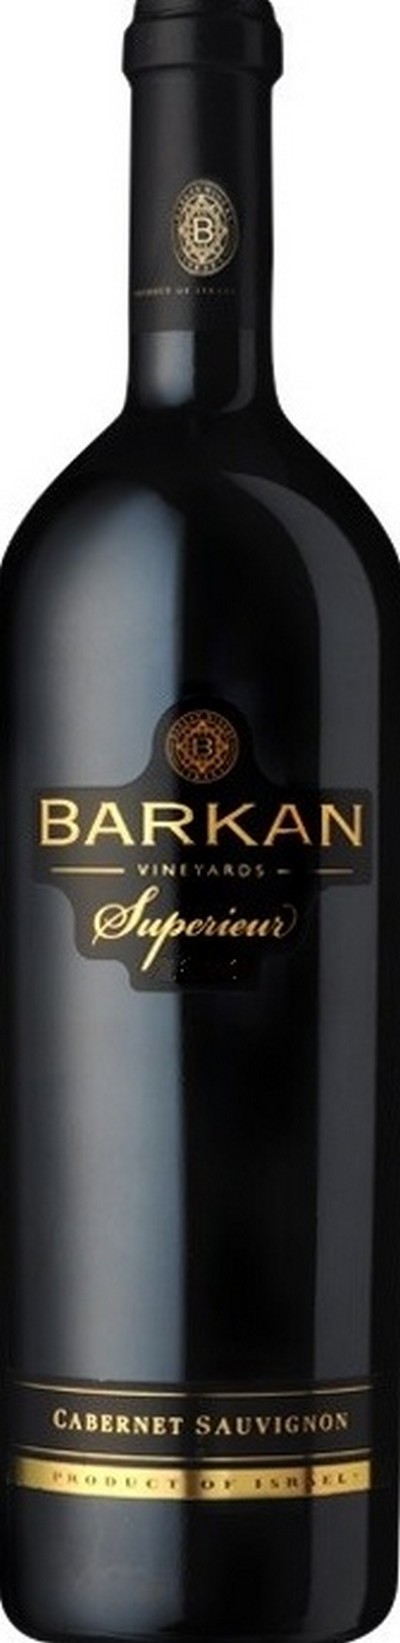 barkan-superieur-cabernet-sauvignon-2012